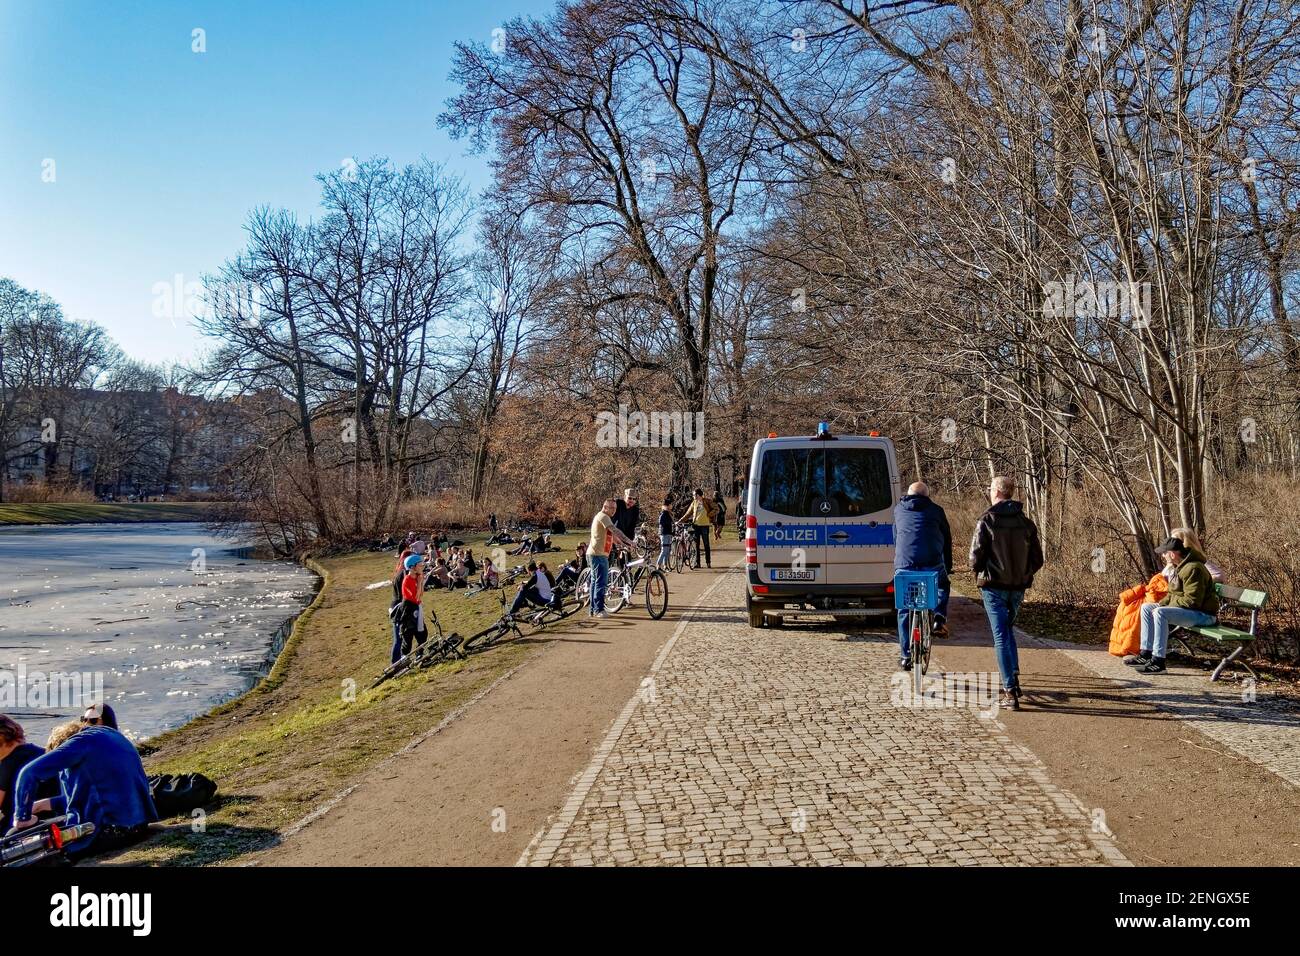 Vorfruehling in Berlin Mitte Februar 2021 , Treptower Park, Junge Leute geniessen das milde Fruehlingswetter am Karpfenteich. Polizei kontrolliert die Stock Photo